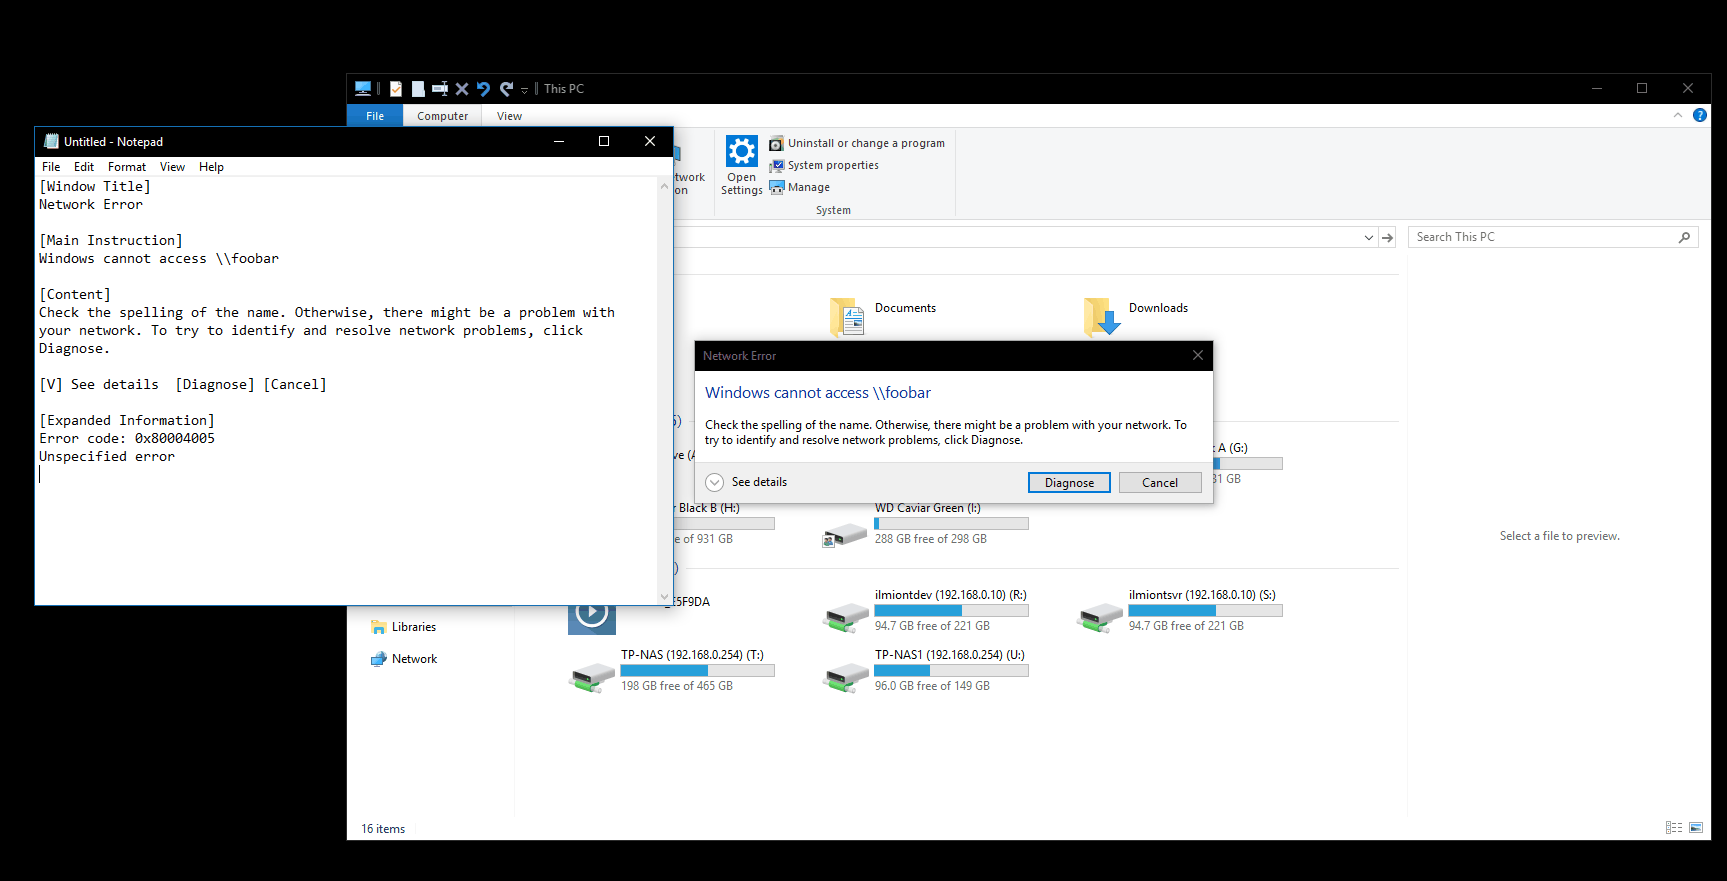 Copying error details in Windows 10